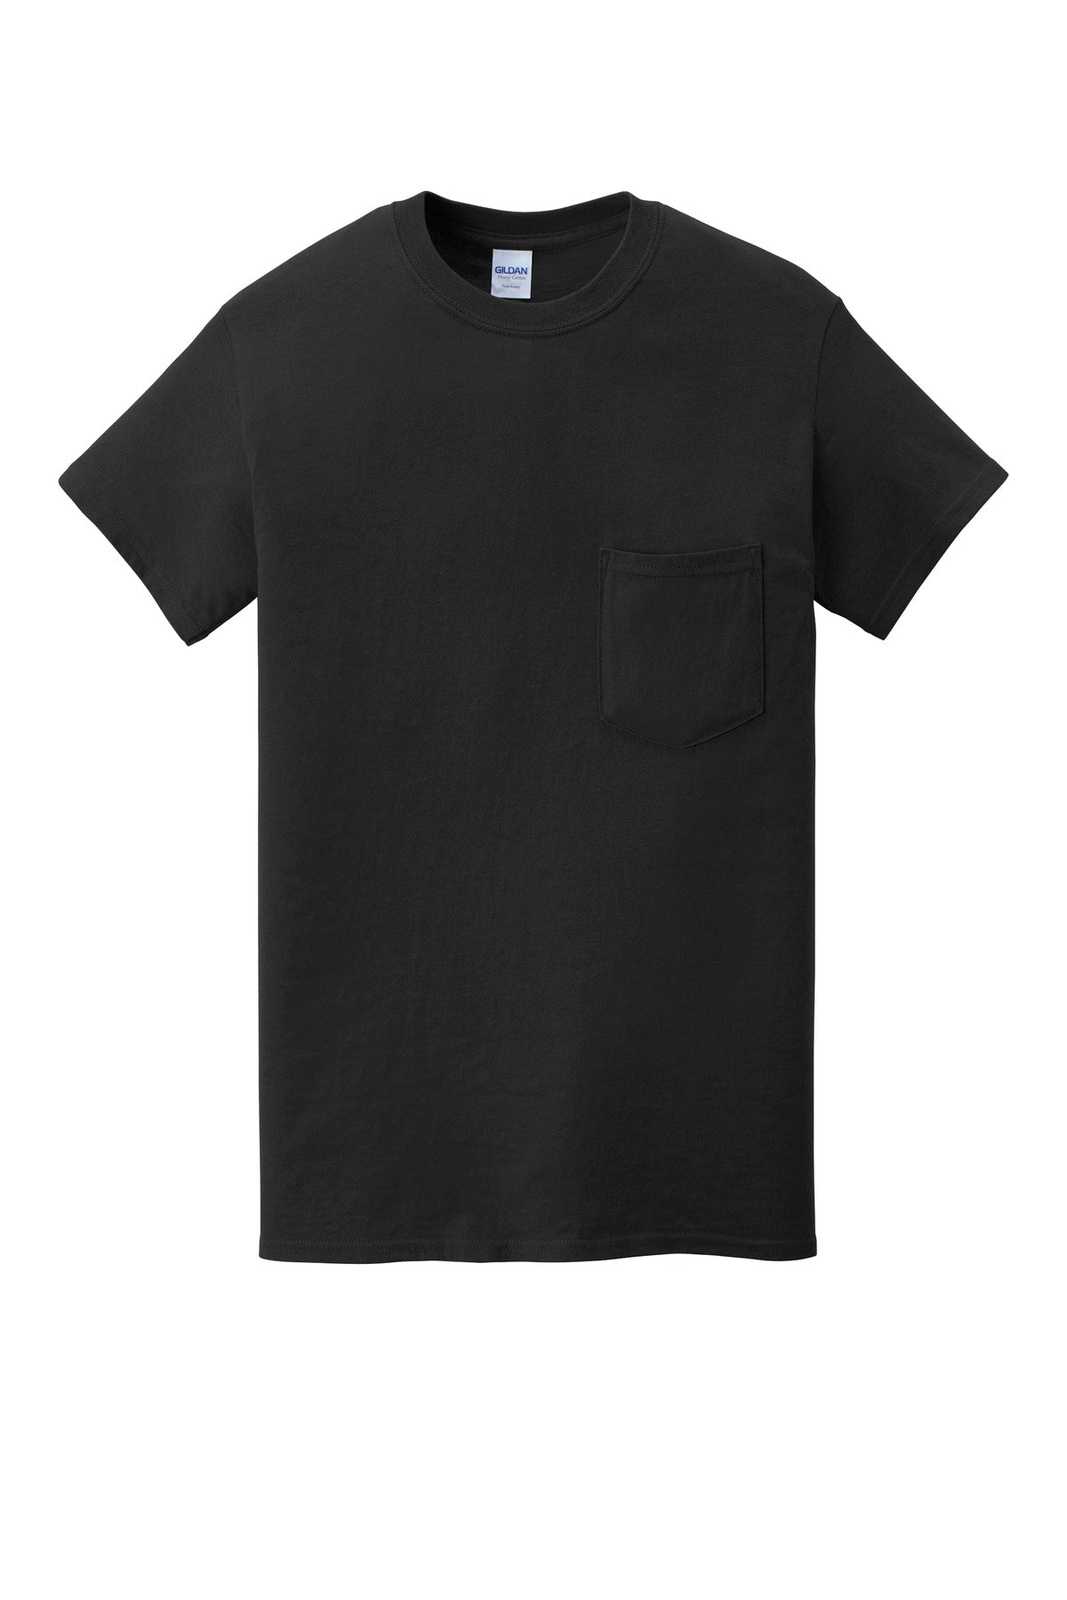 Gildan 5300 Heavy Cotton 100% Cotton Pocket T-Shirt - Black - HIT a Double